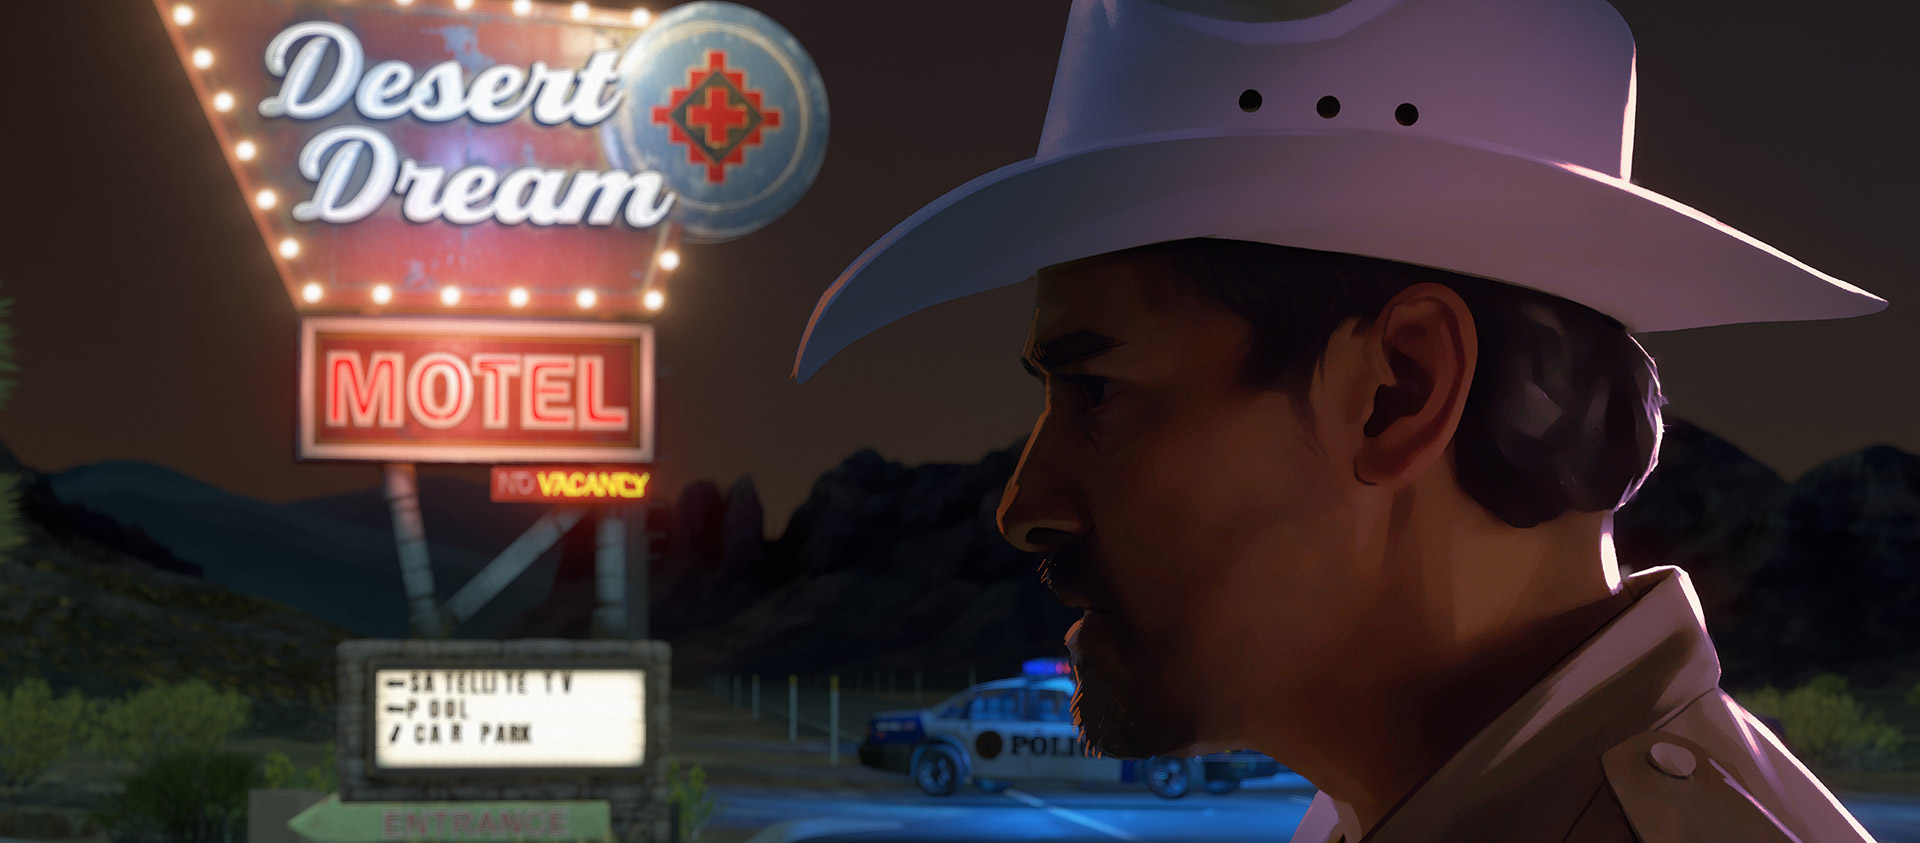 頭戴牛仔帽的執法人員站在霓虹燈照亮的汽車旅館招牌下。